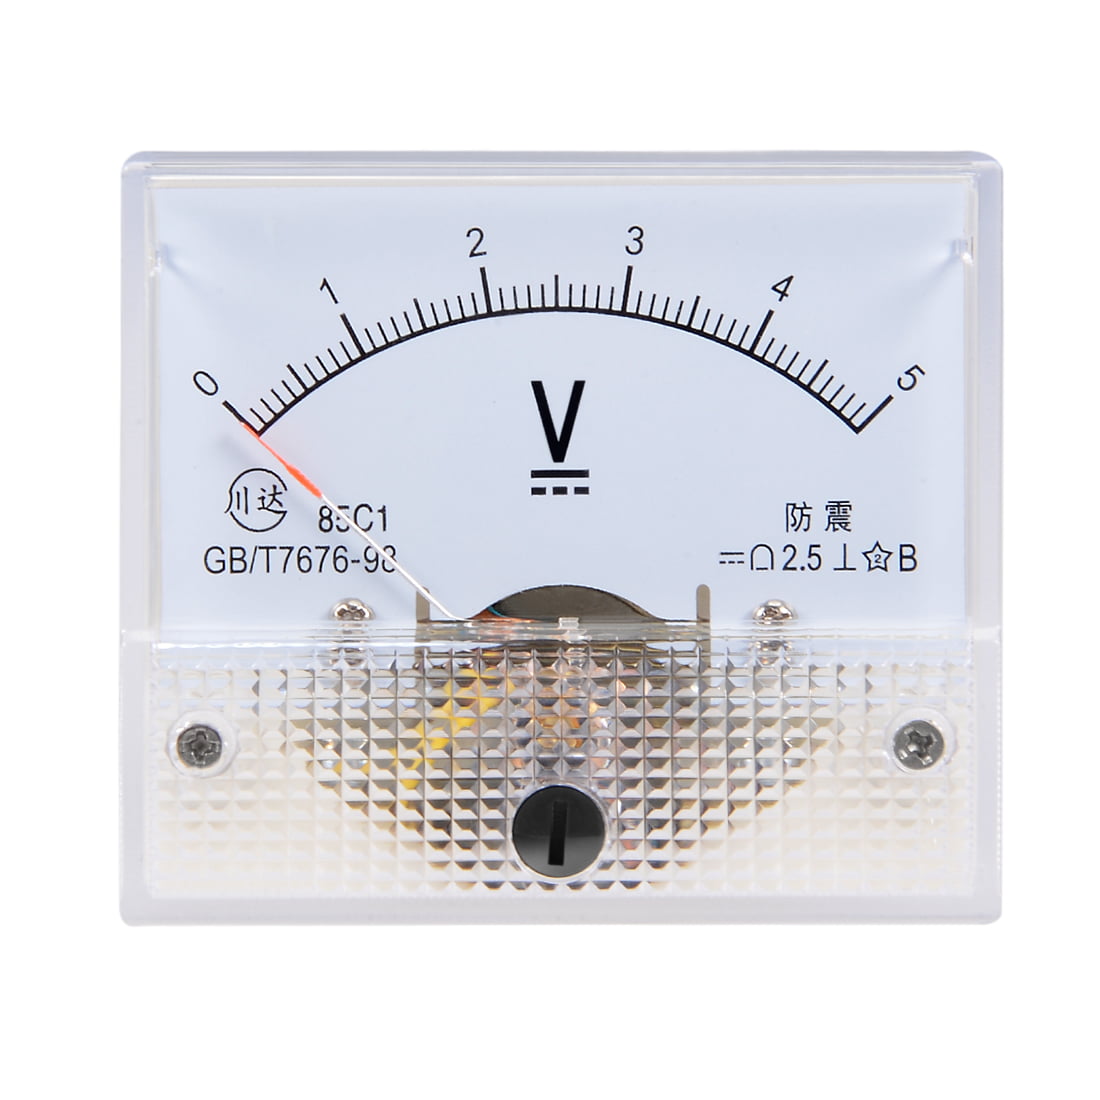 DC 0-5V Analog Panel Voltage Gauge Volt Meter 85C1 2.5% Error